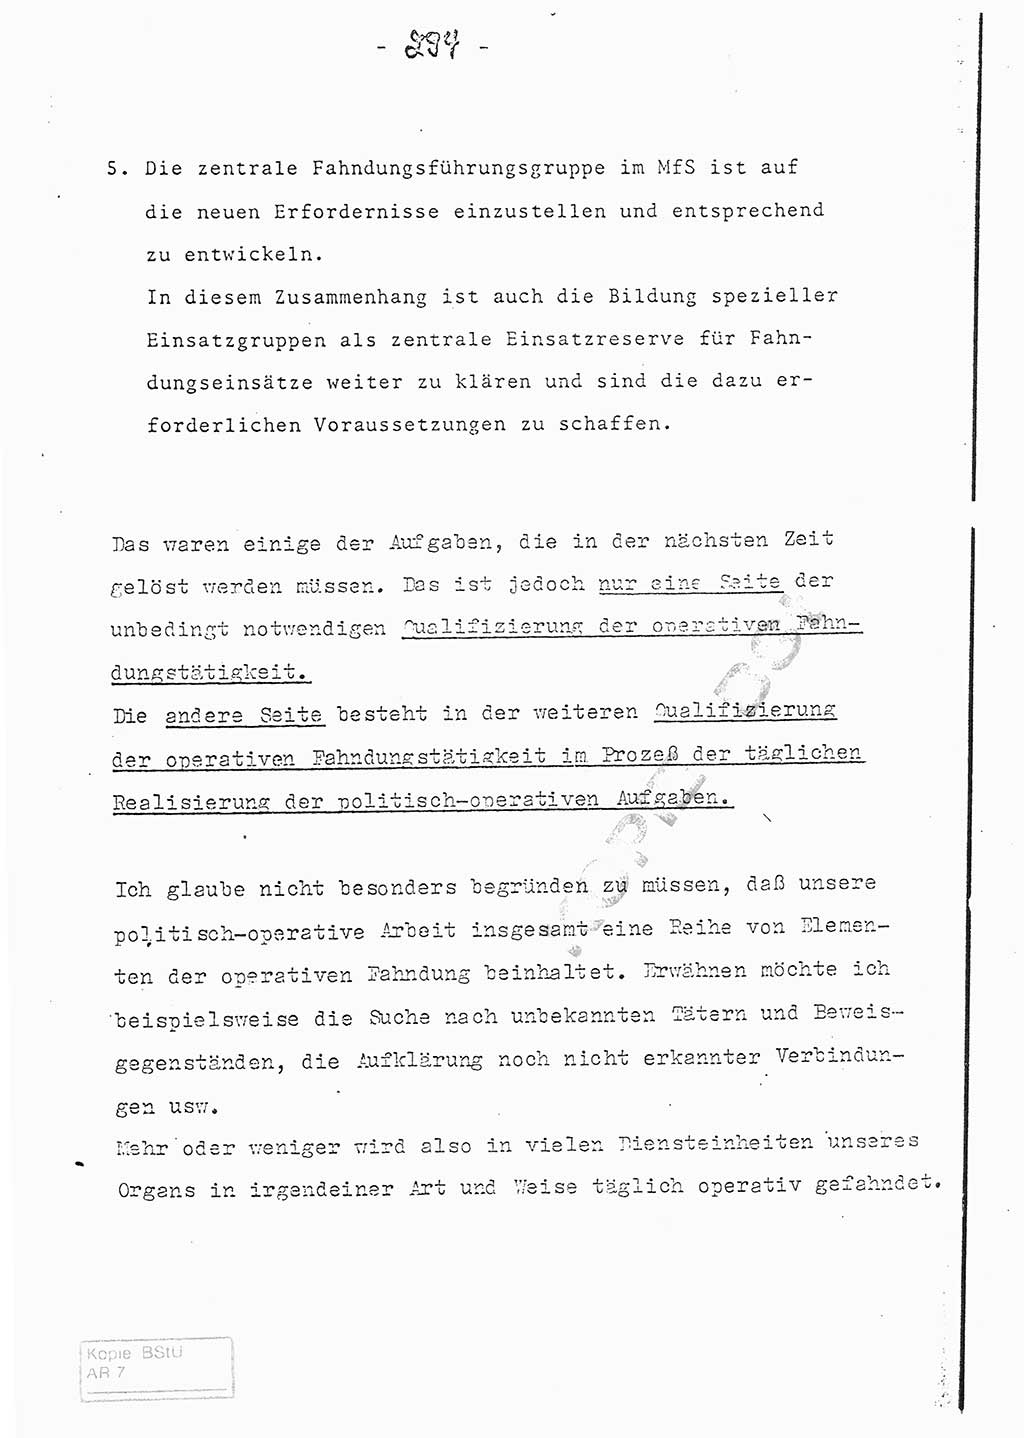 Referat (Entwurf) des Genossen Minister (Generaloberst Erich Mielke) auf der Dienstkonferenz 1972, Ministerium für Staatssicherheit (MfS) [Deutsche Demokratische Republik (DDR)], Der Minister, Geheime Verschlußsache (GVS) 008-150/72, Berlin 25.2.1972, Seite 294 (Ref. Entw. DK MfS DDR Min. GVS 008-150/72 1972, S. 294)